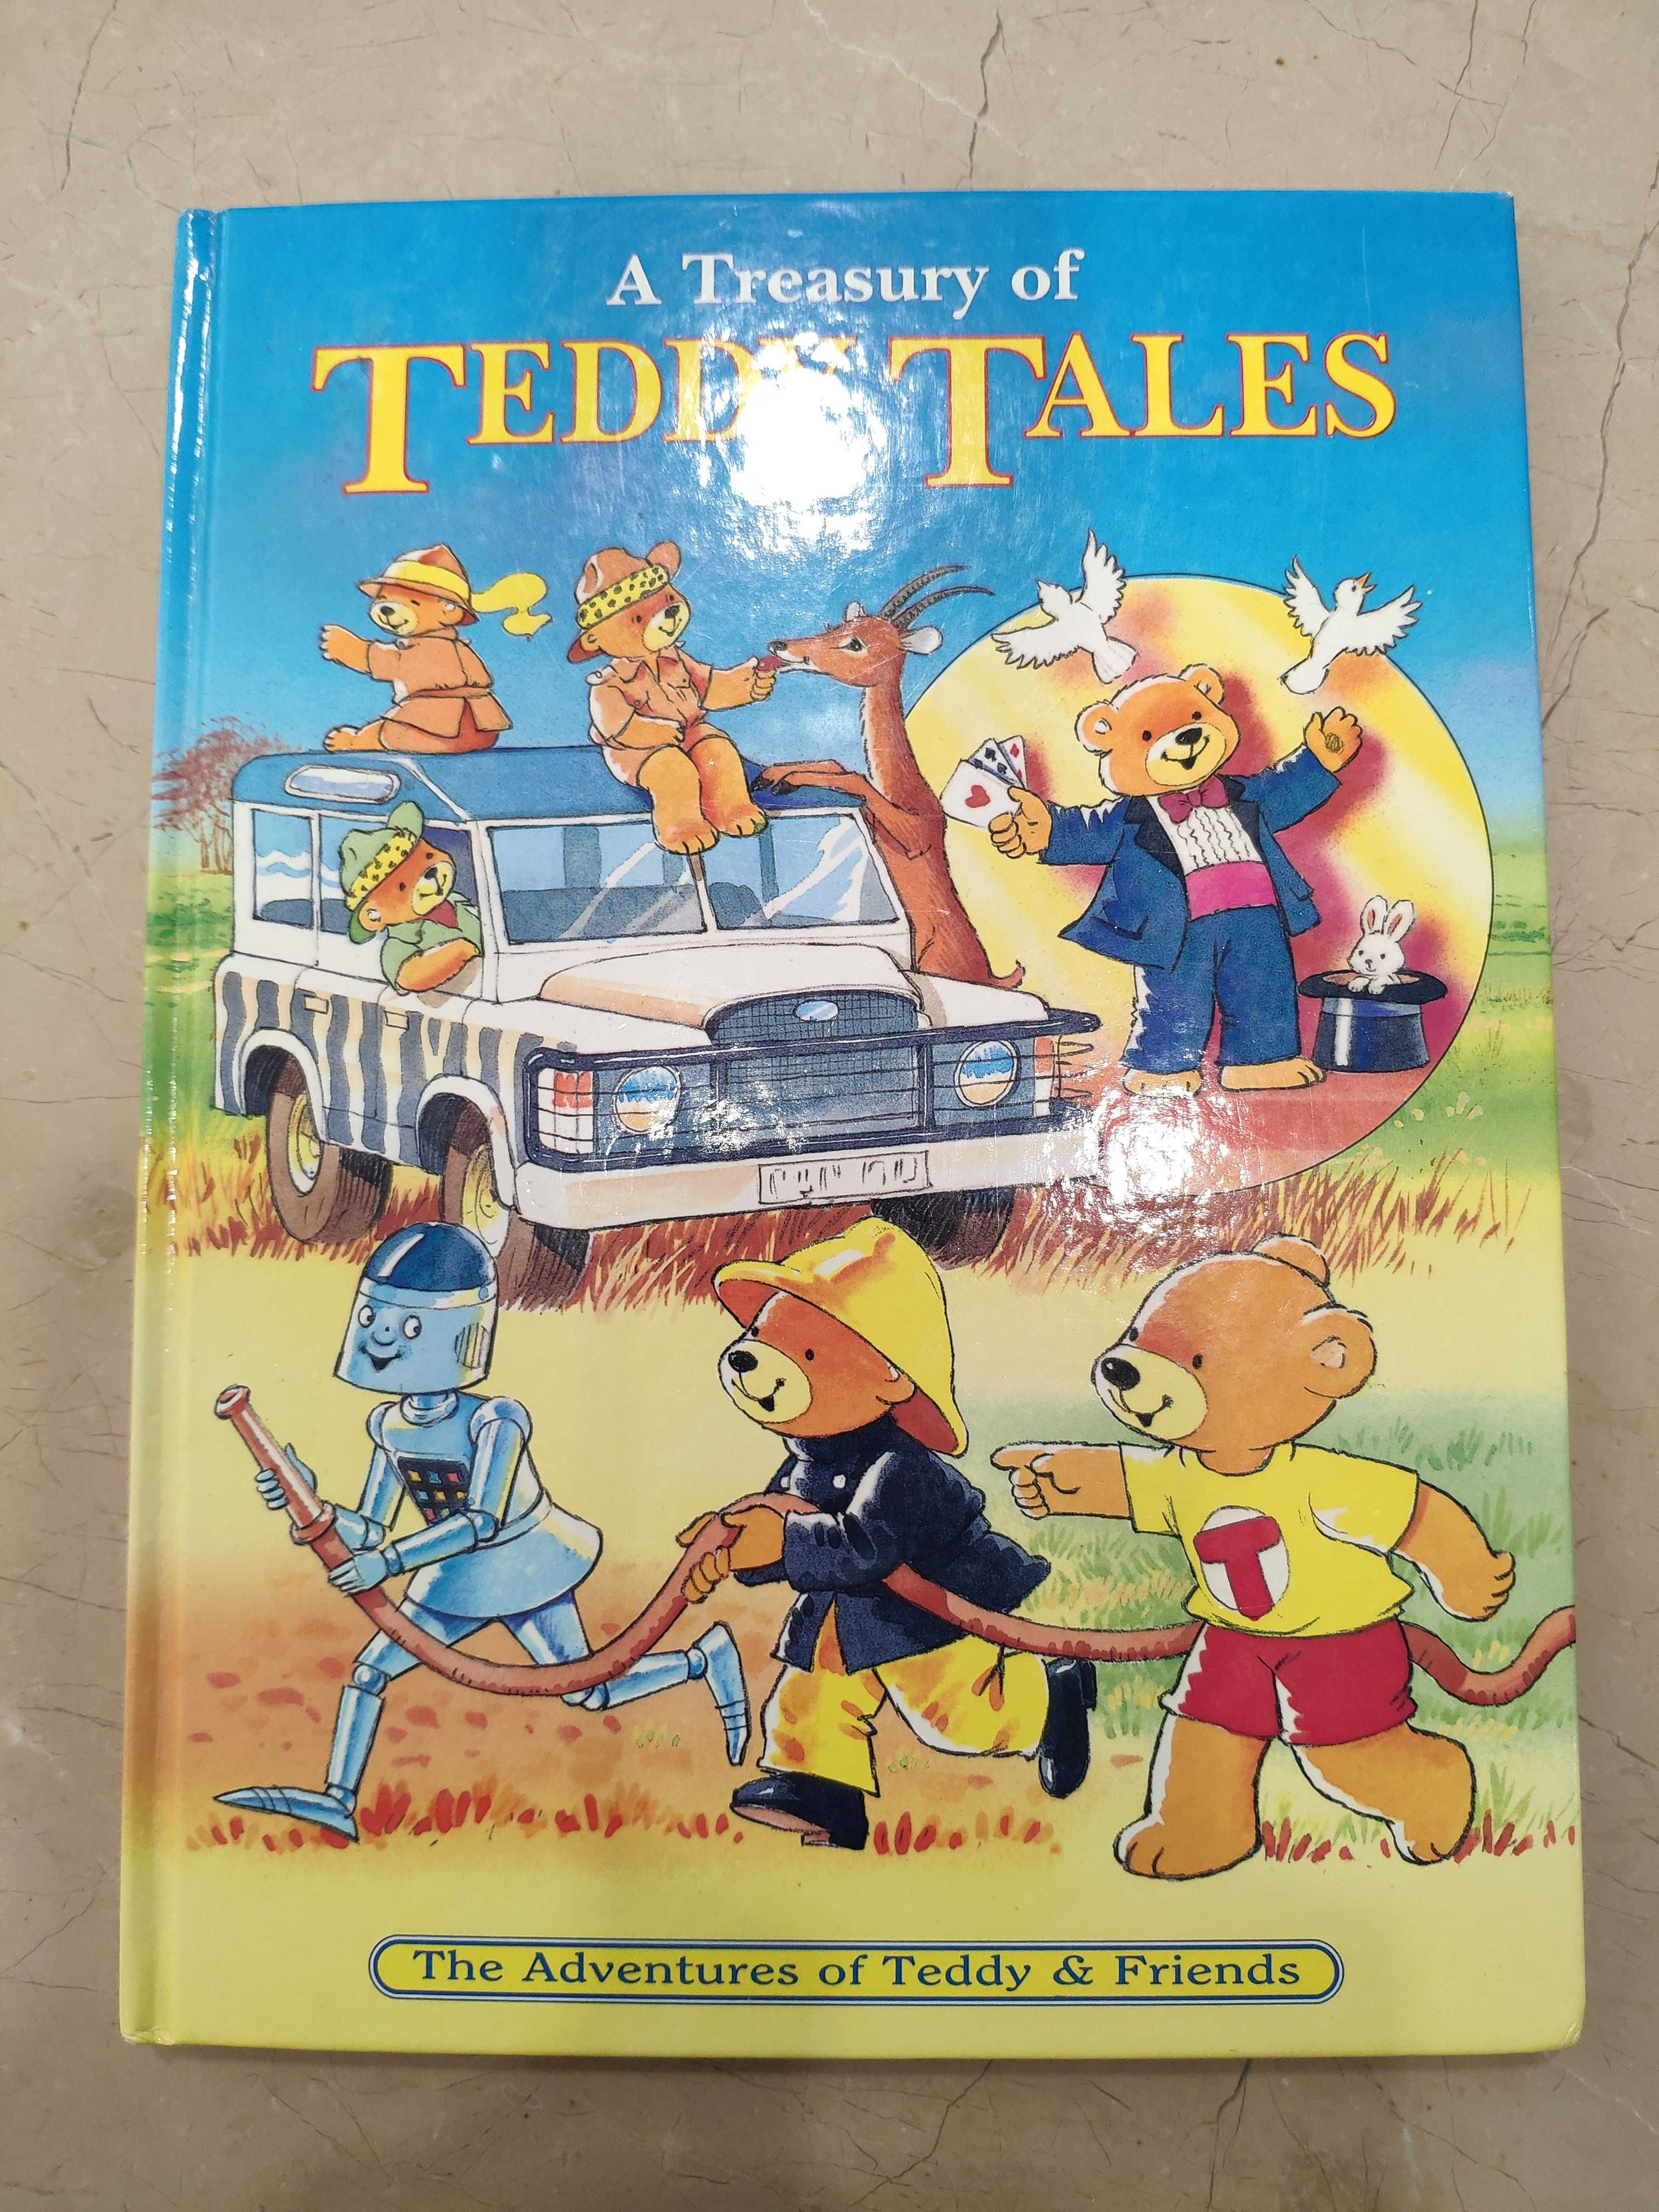 Tales teddy Teddy Tales: